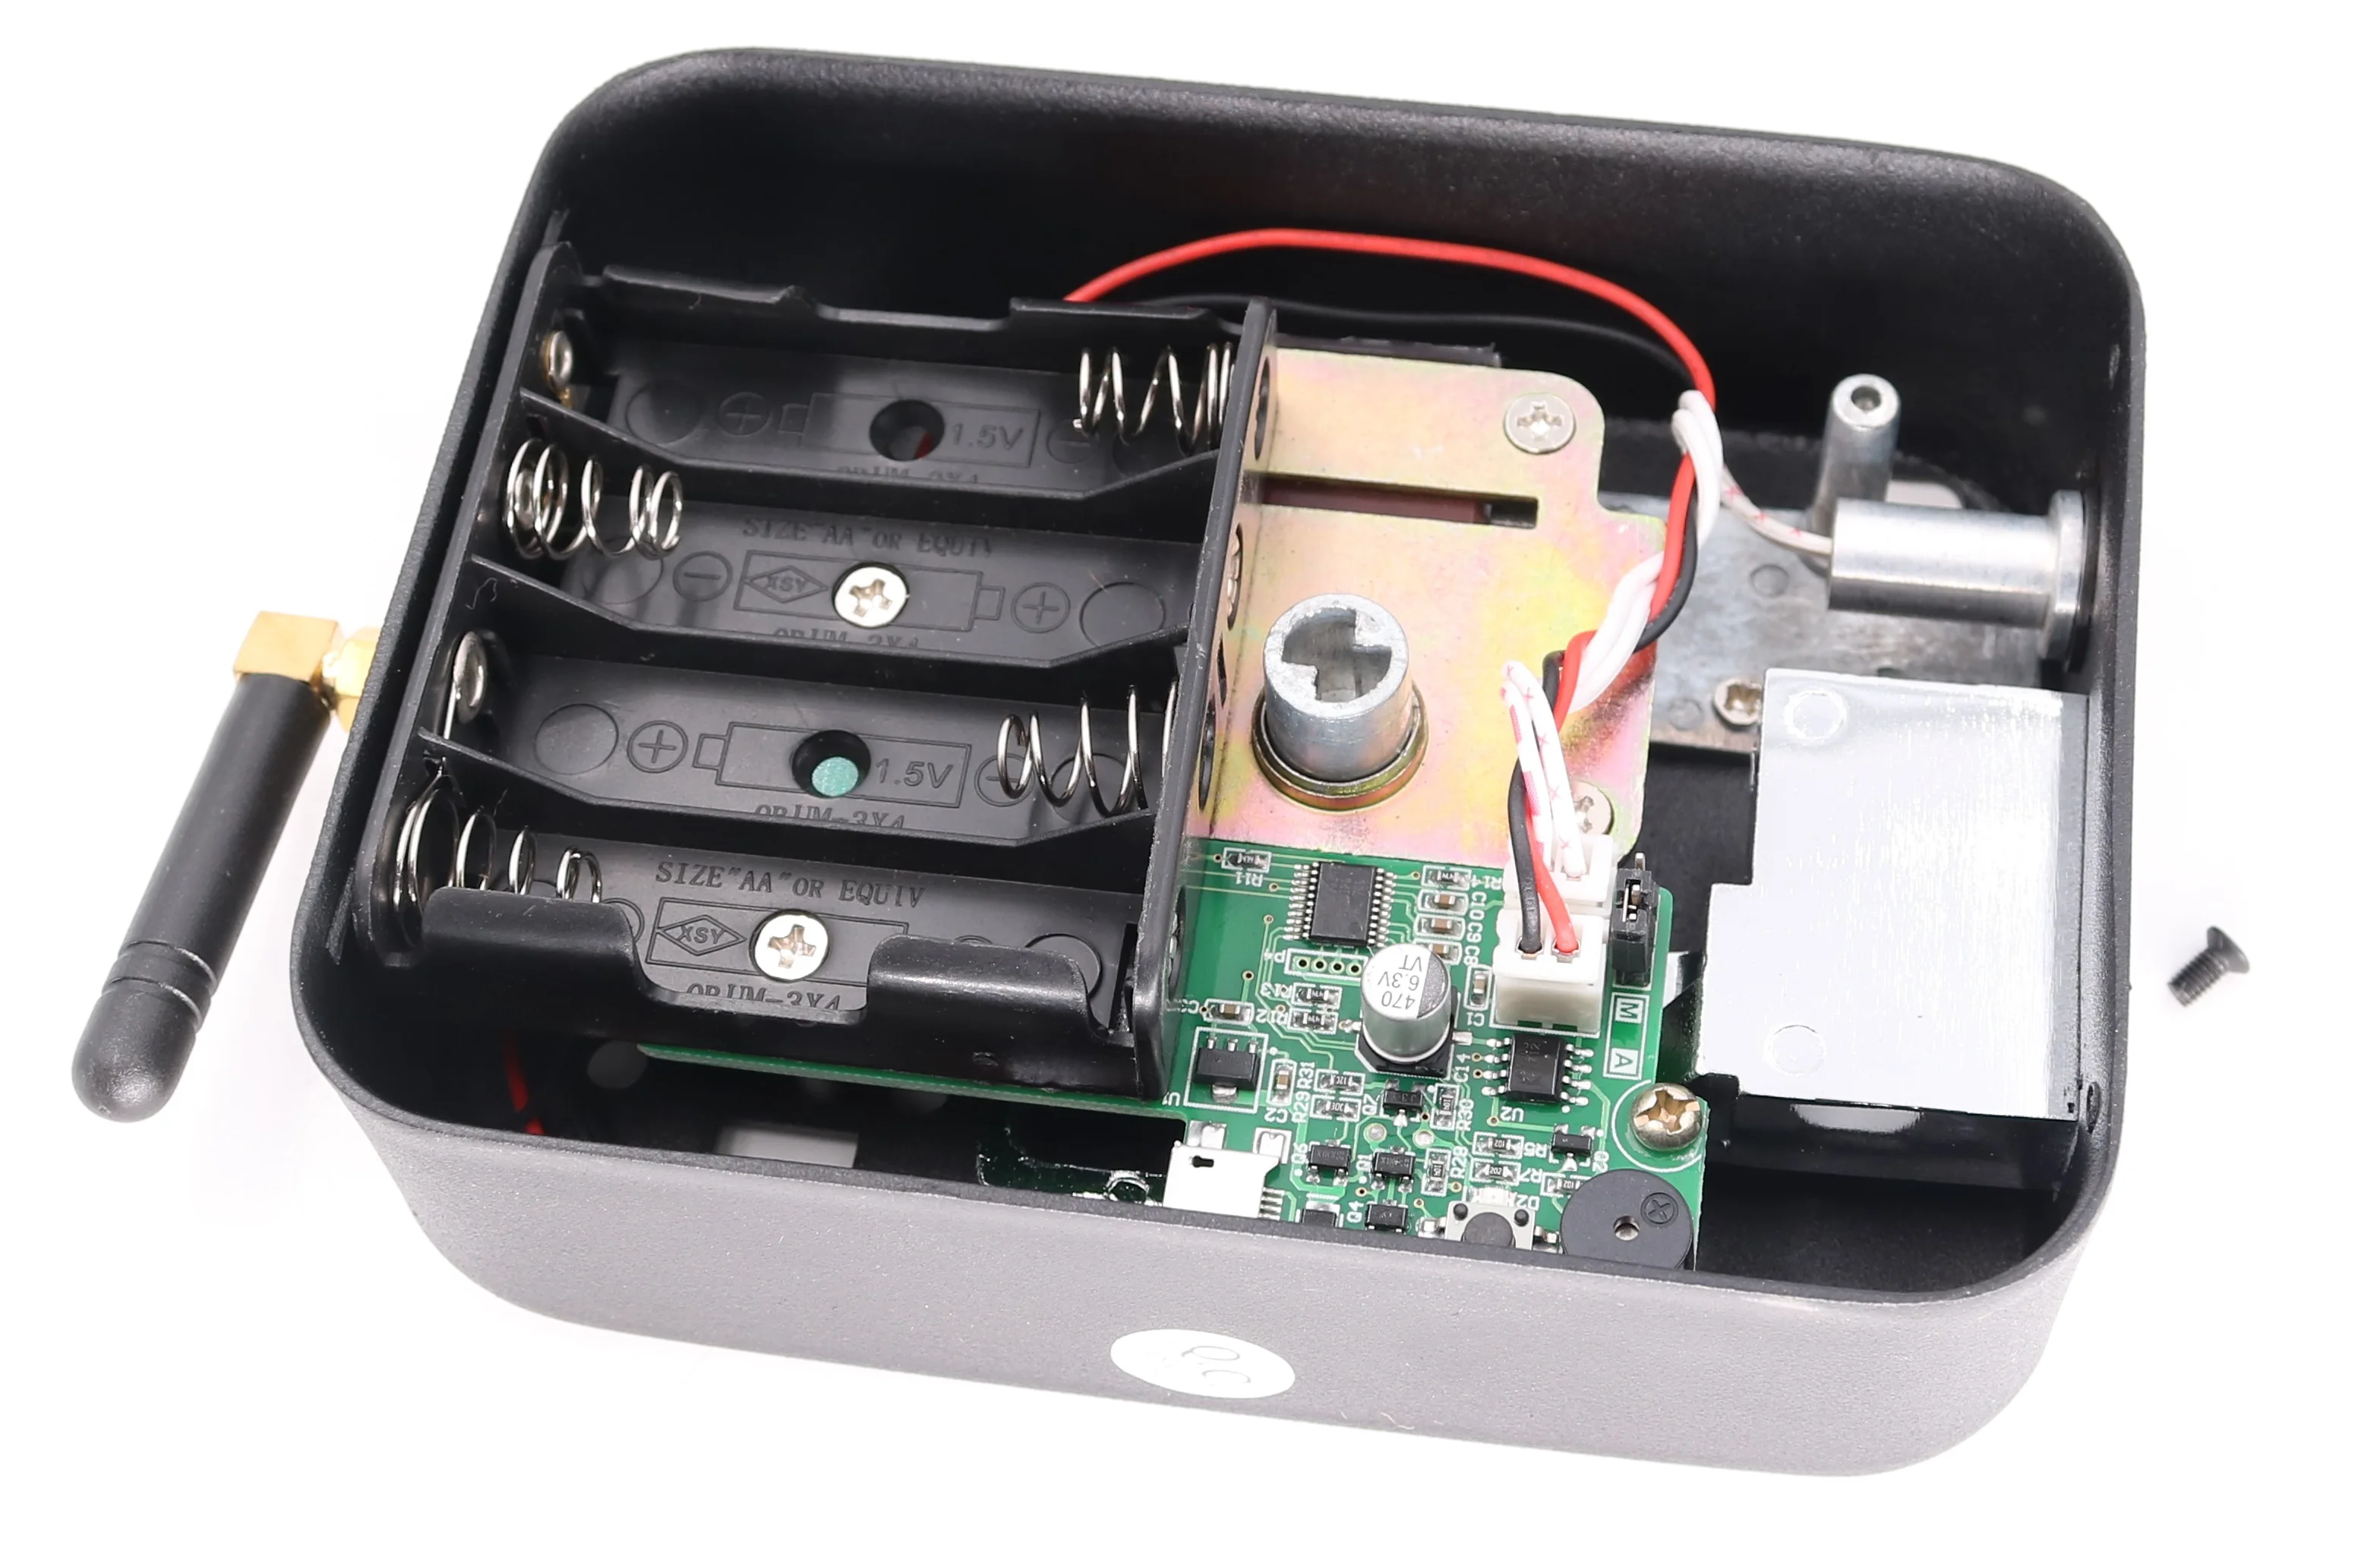 Беспроводной электронный замок обода дистанционного управления блокировка двигателя с двумя дистанционными ручками источник питания батареи